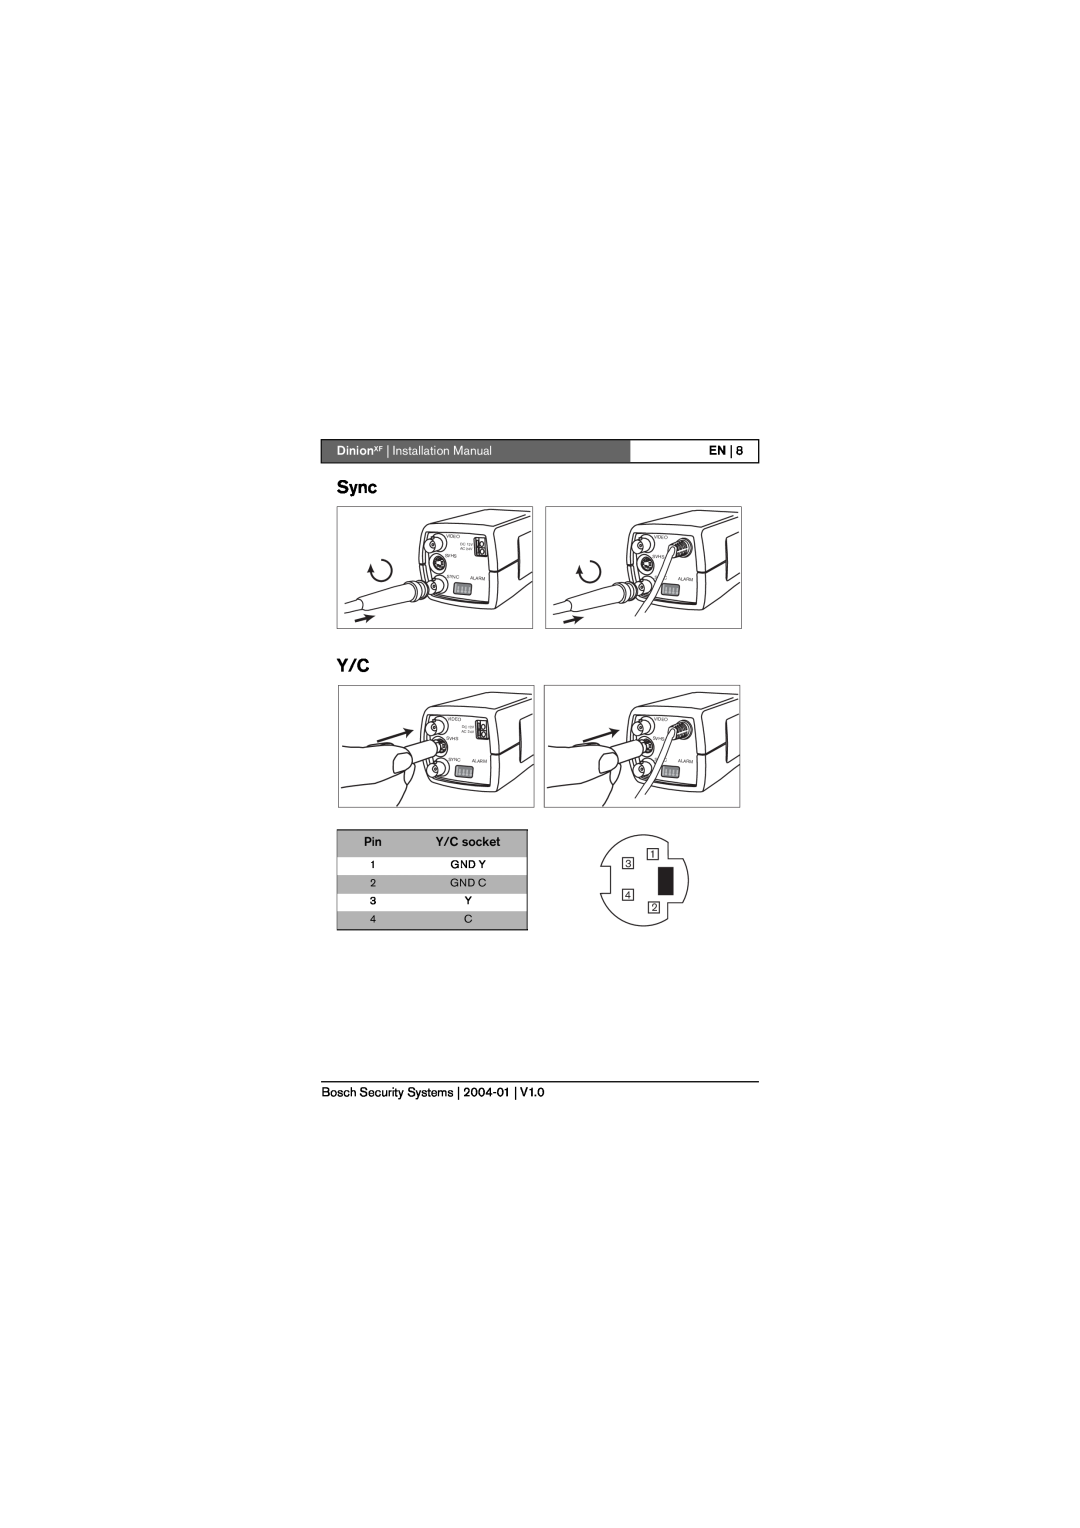 Bosch Appliances LTC 0495, LTC 0620 Sync, Y/C socket, DinionXF Installation Manual, En, Bosch Security Systems 